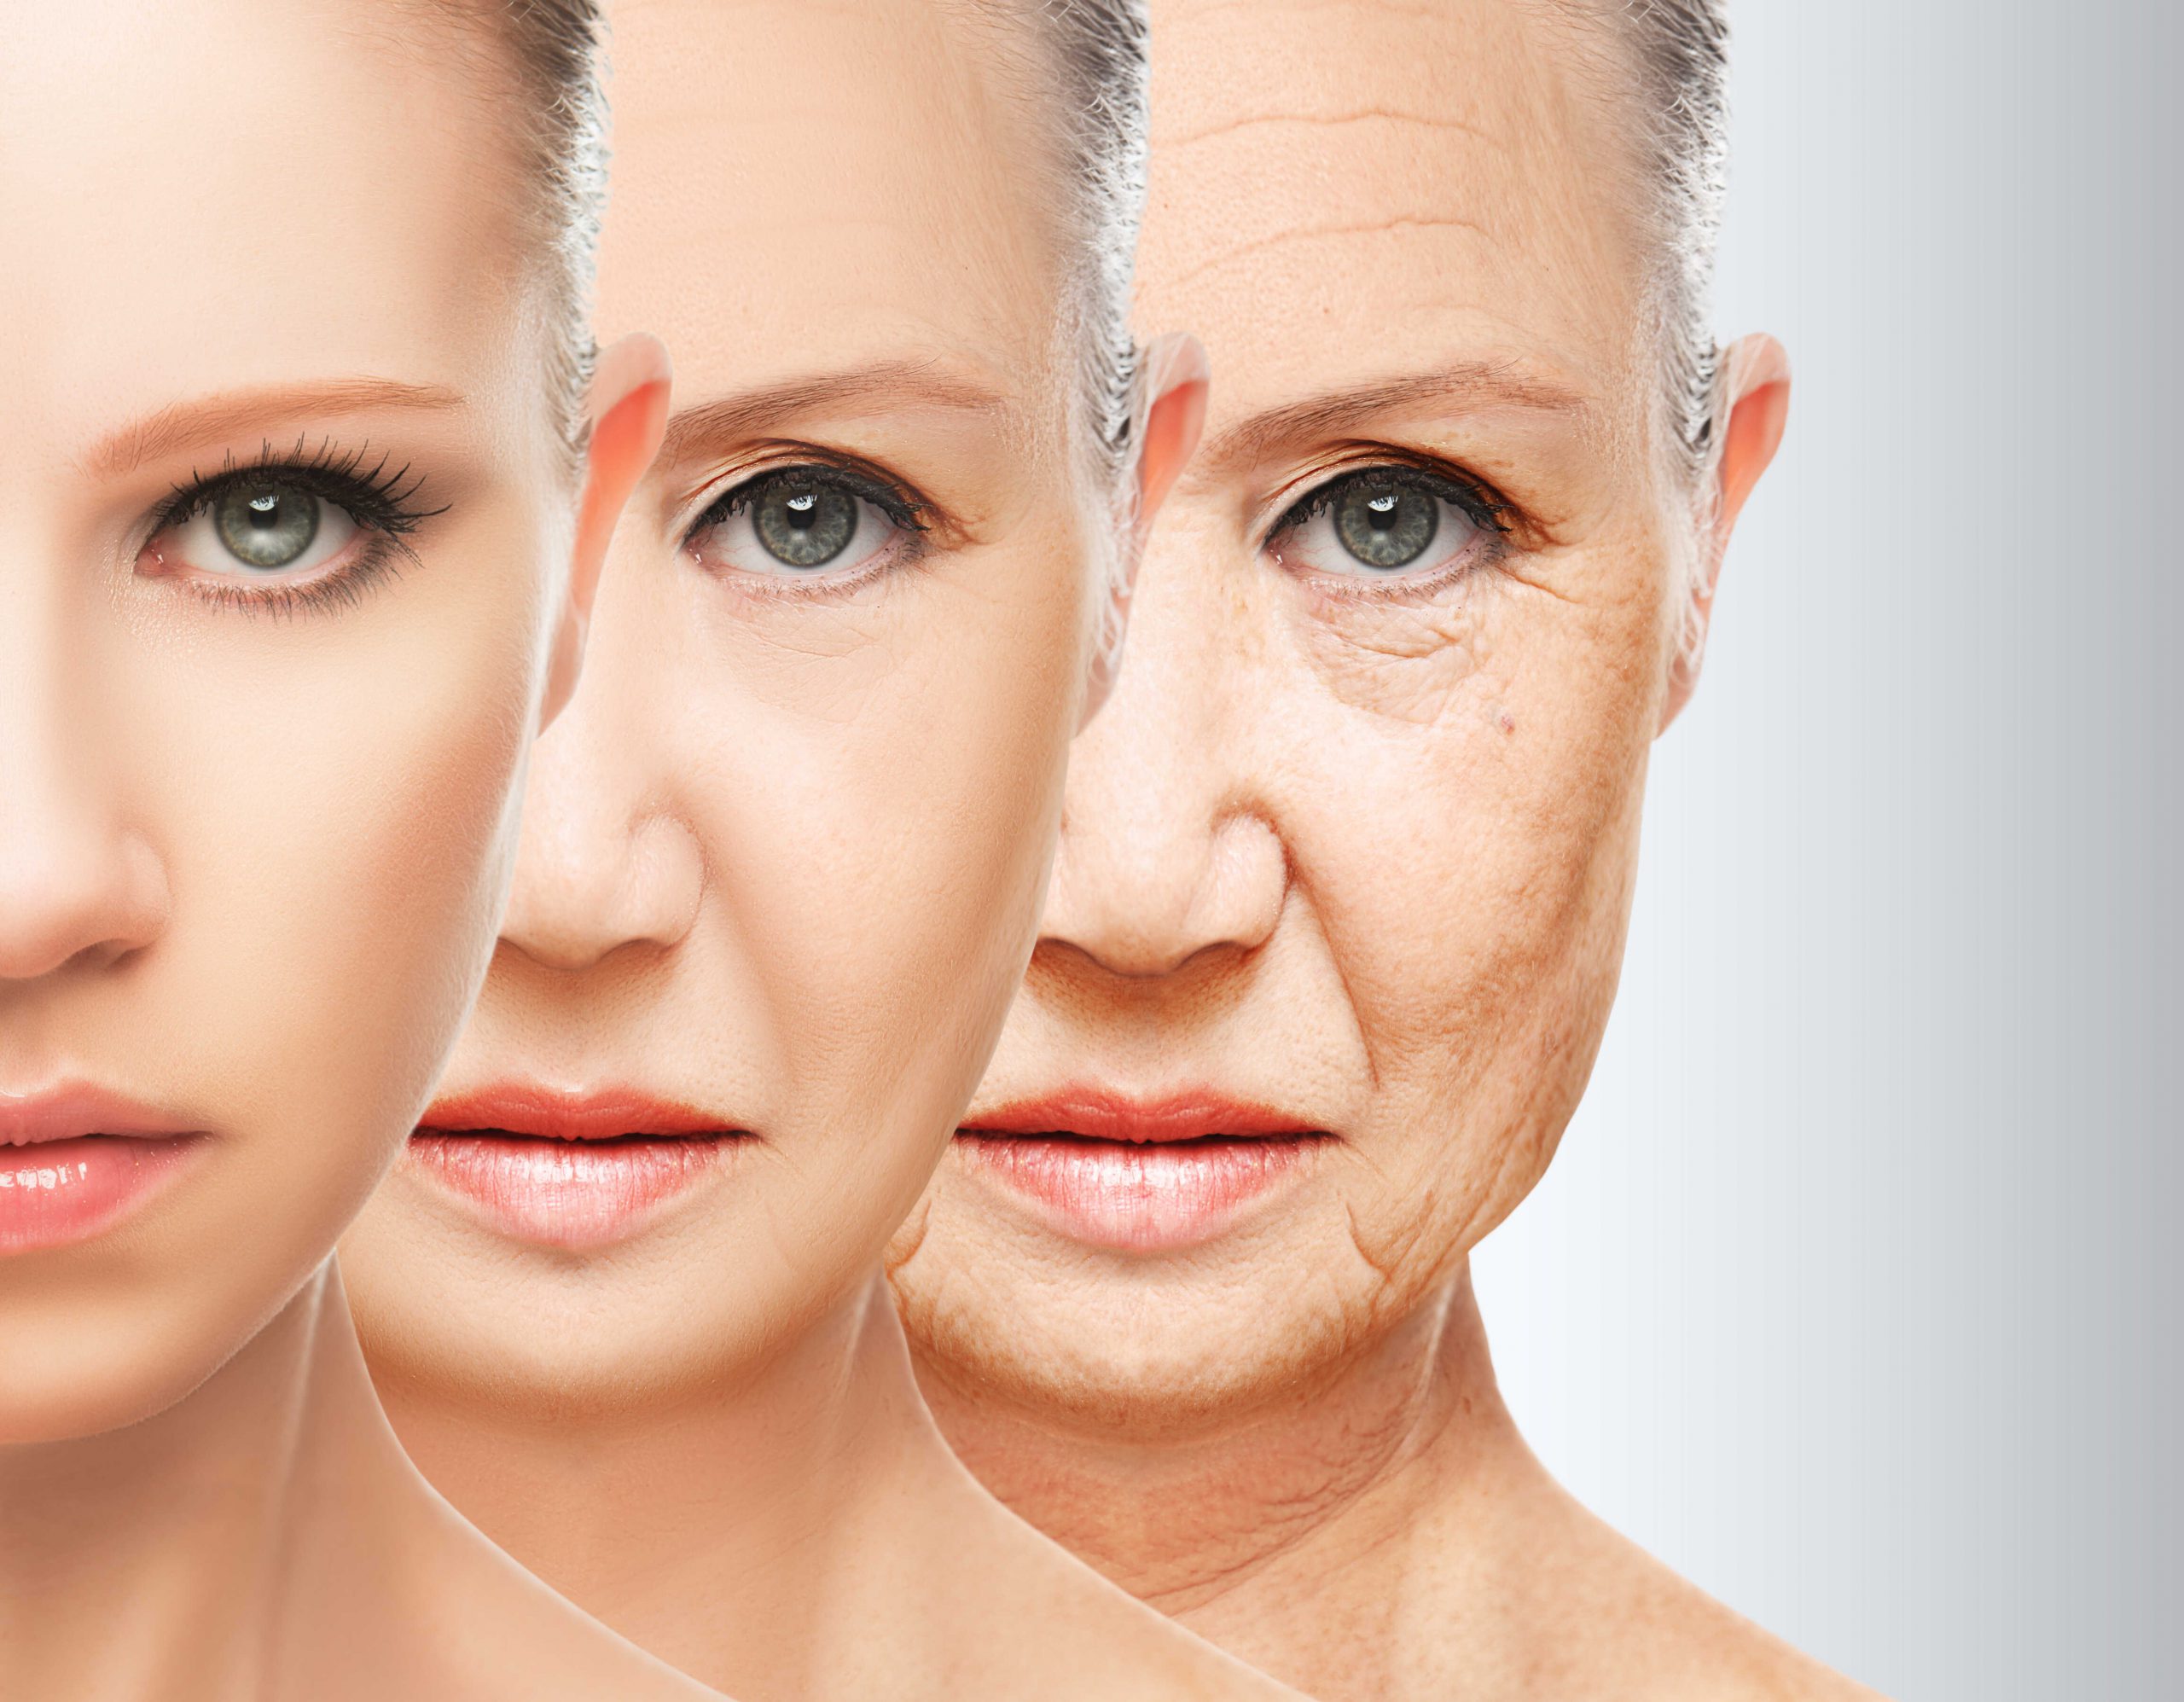 Rodzaje oraz przyczyny starzenia się skóry; cz. 1 – egzogenne i endogenne